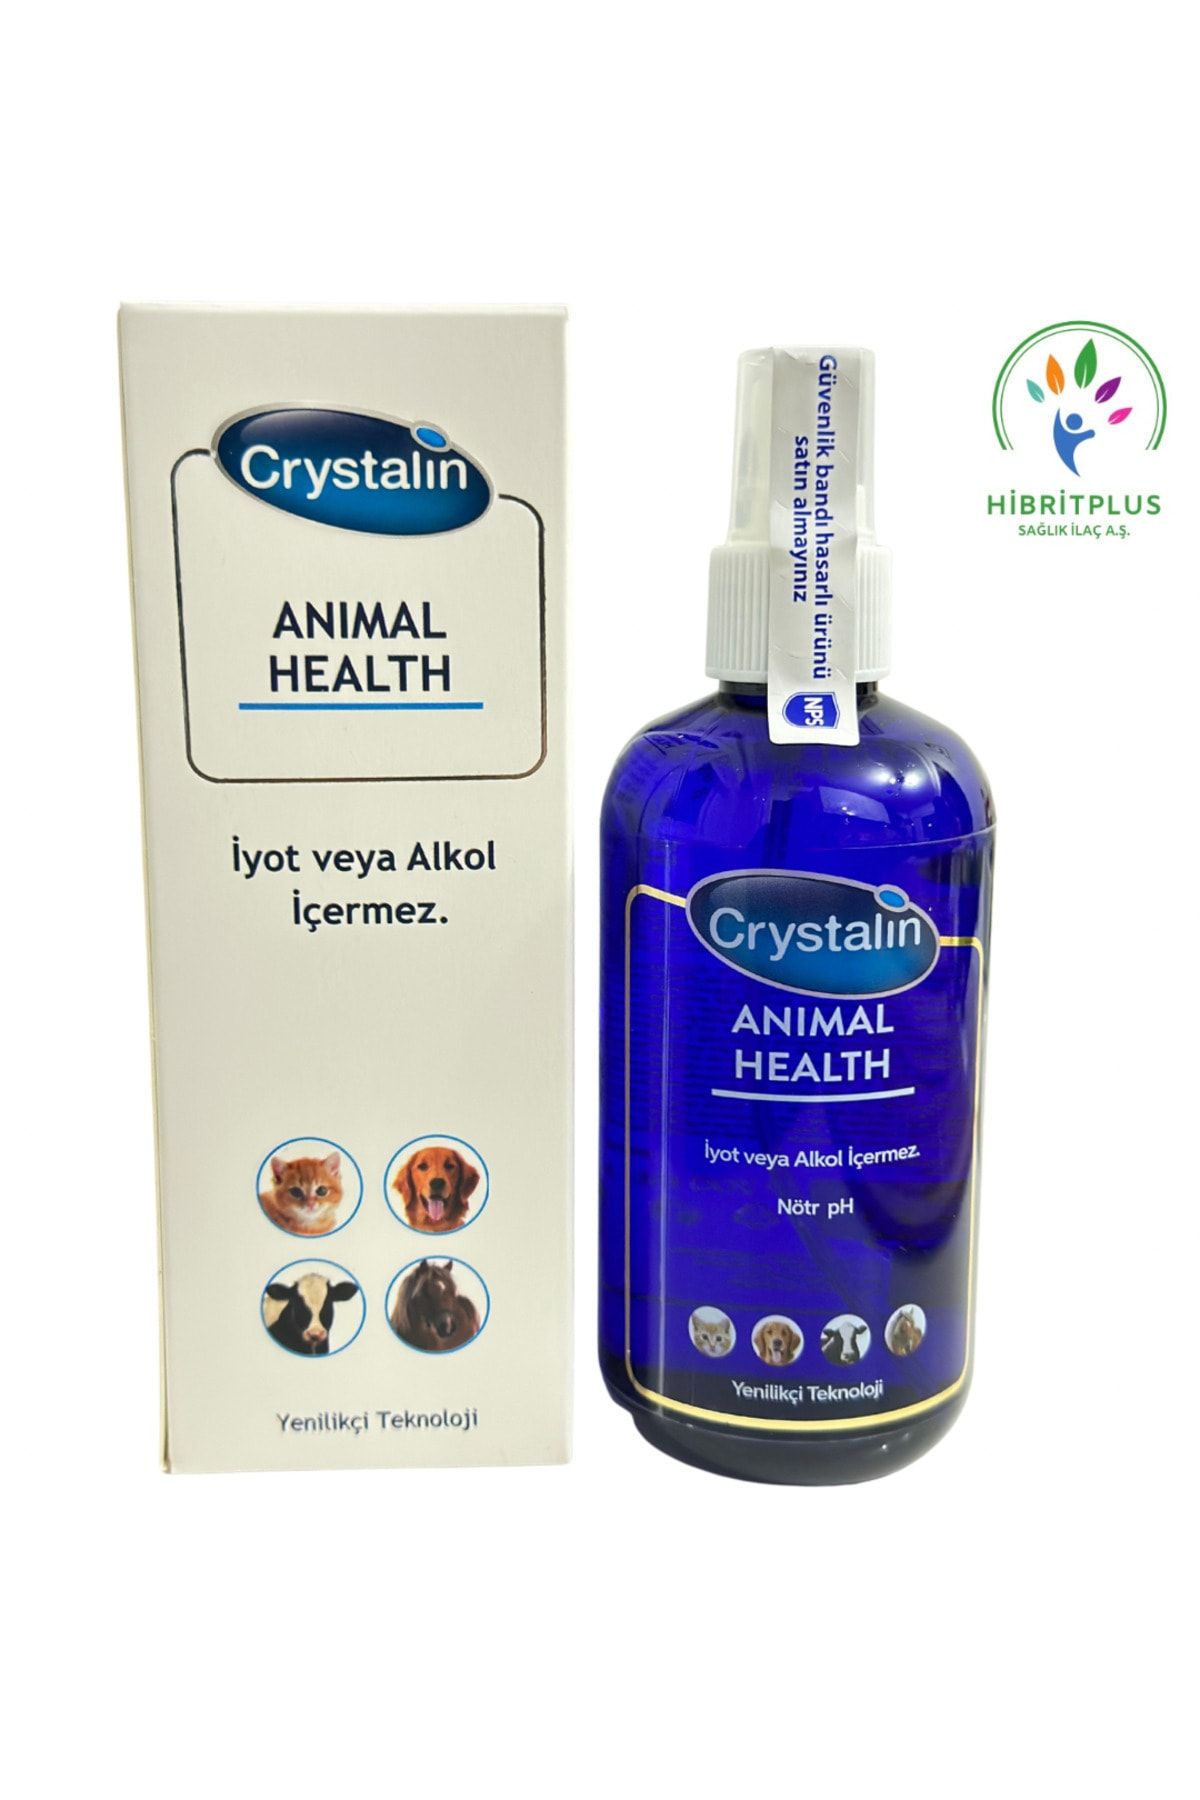 Crystalin Animal Healt 200 Ml Antiseptik Dezenfektan Yara Ve Cilt Bakım 2025 Miatlıdır